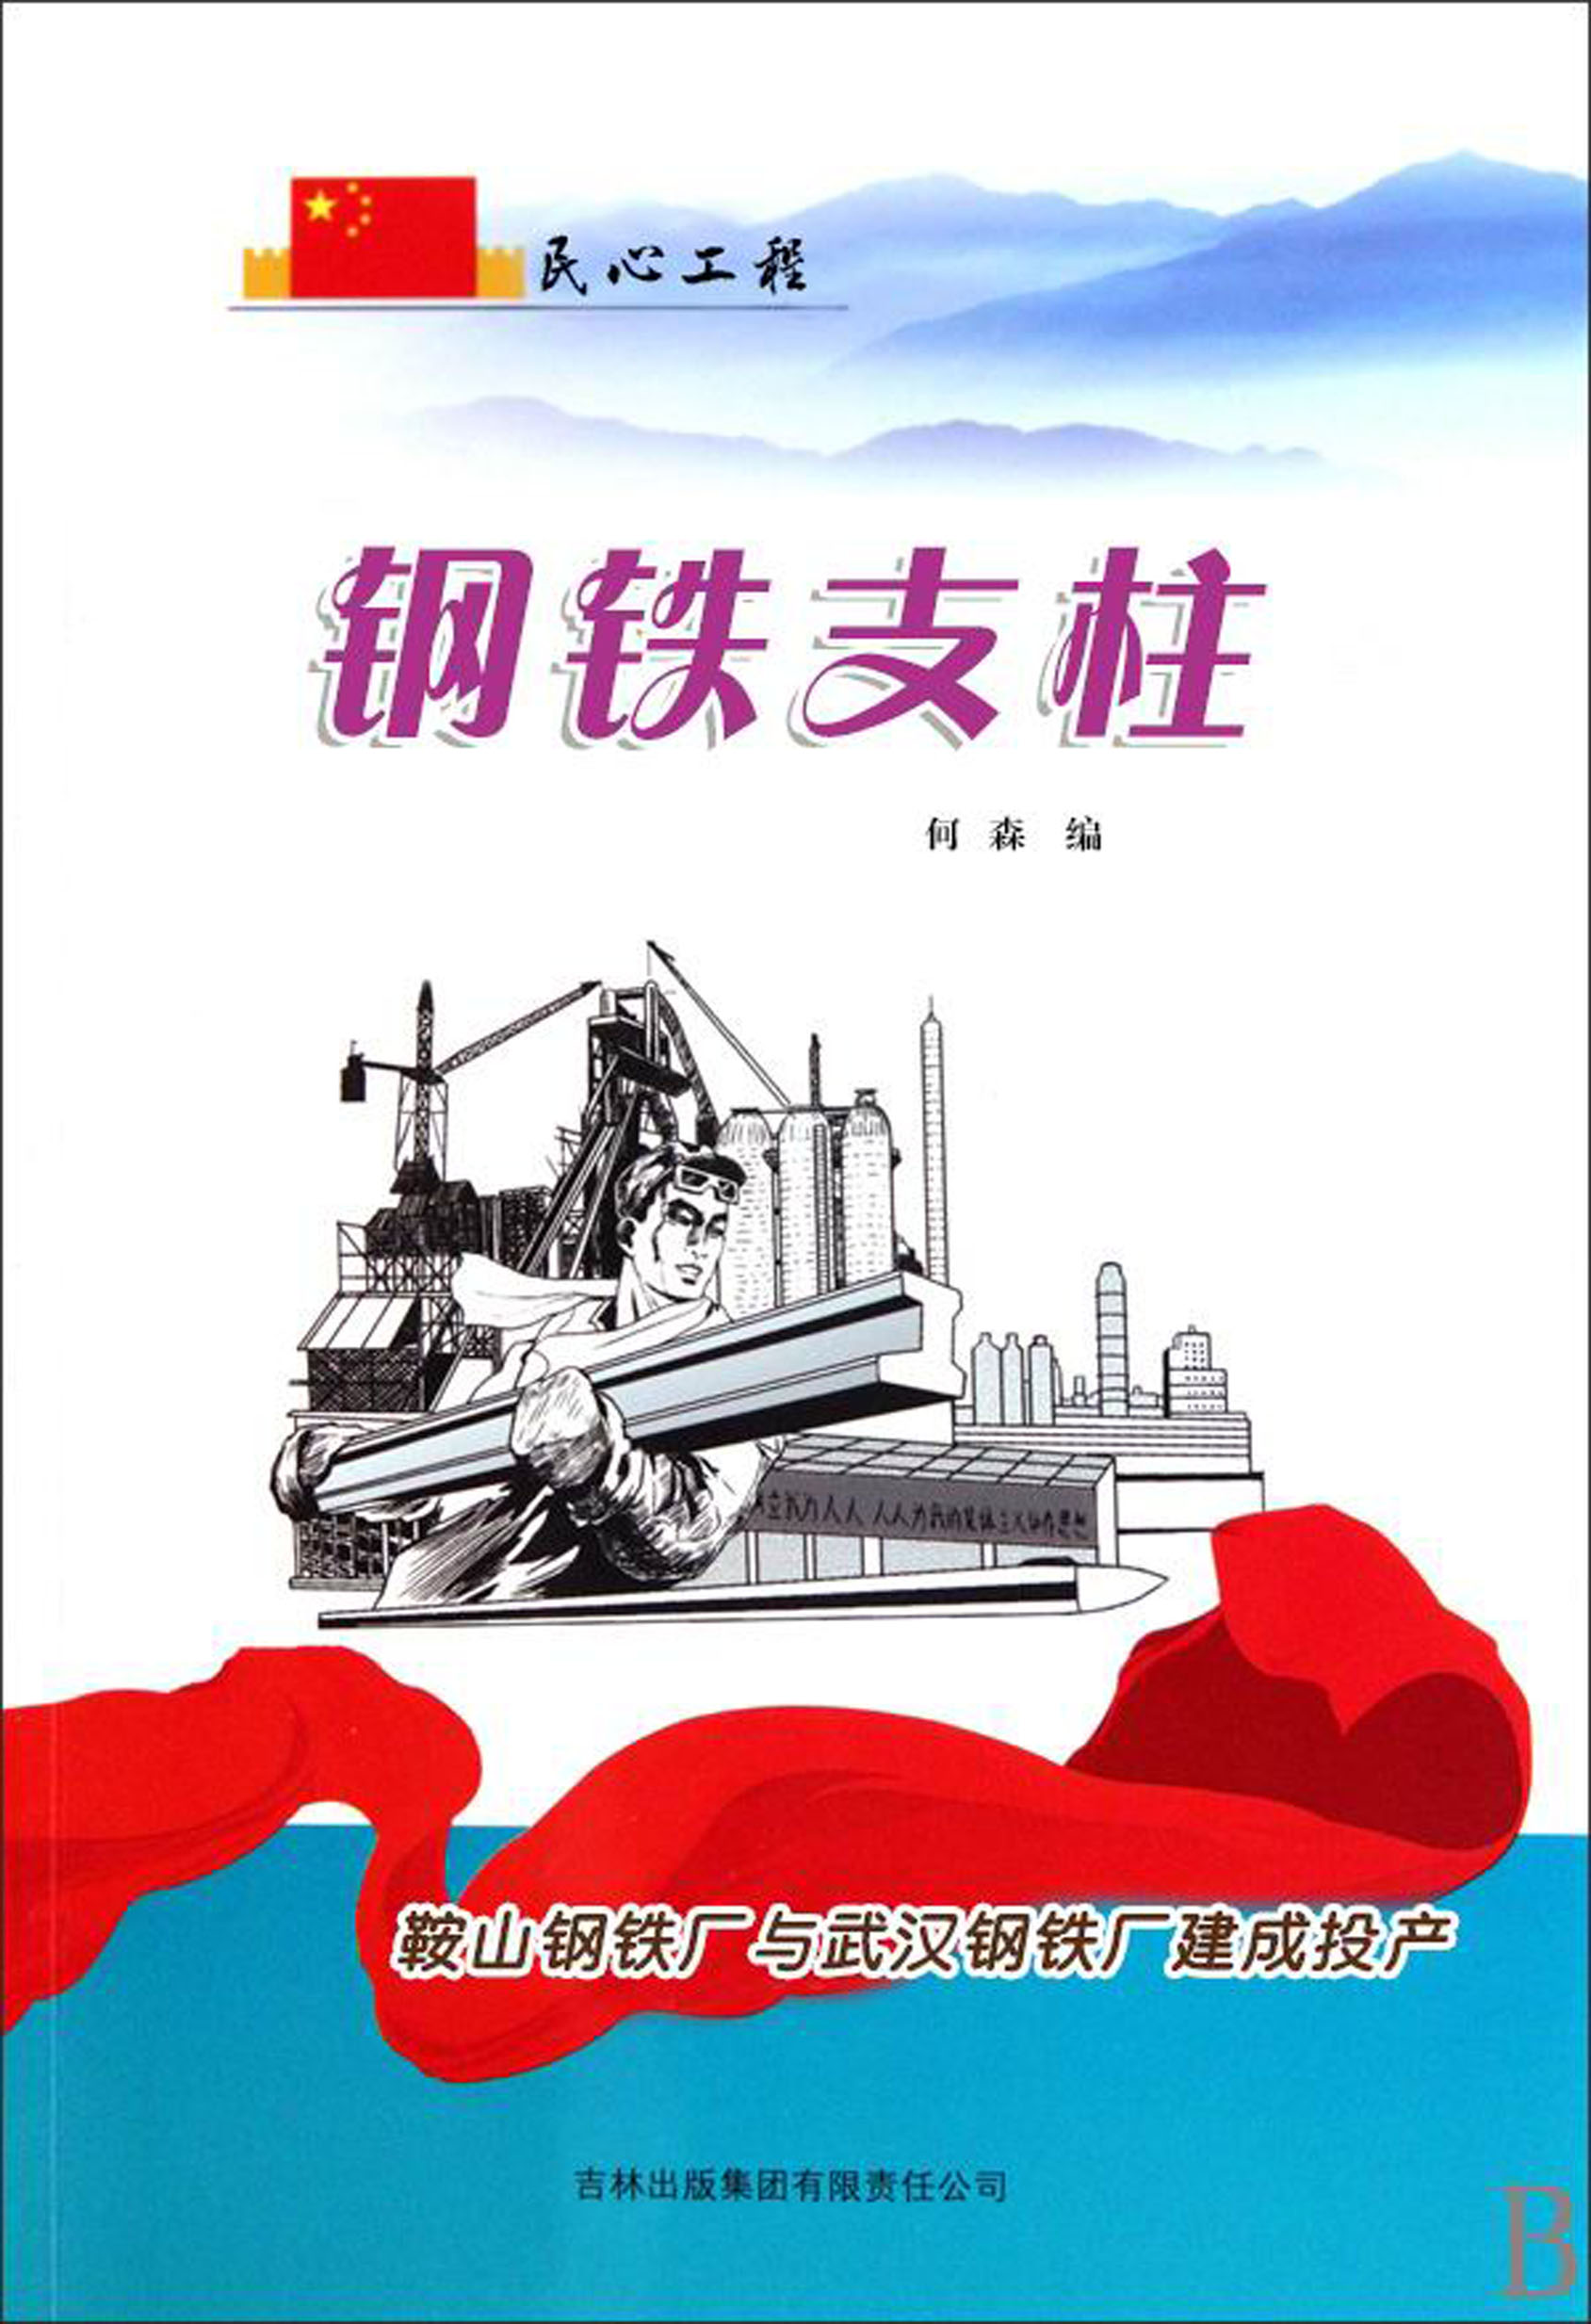 钢铁支柱——鞍山钢铁厂与武汉钢铁厂建成投产